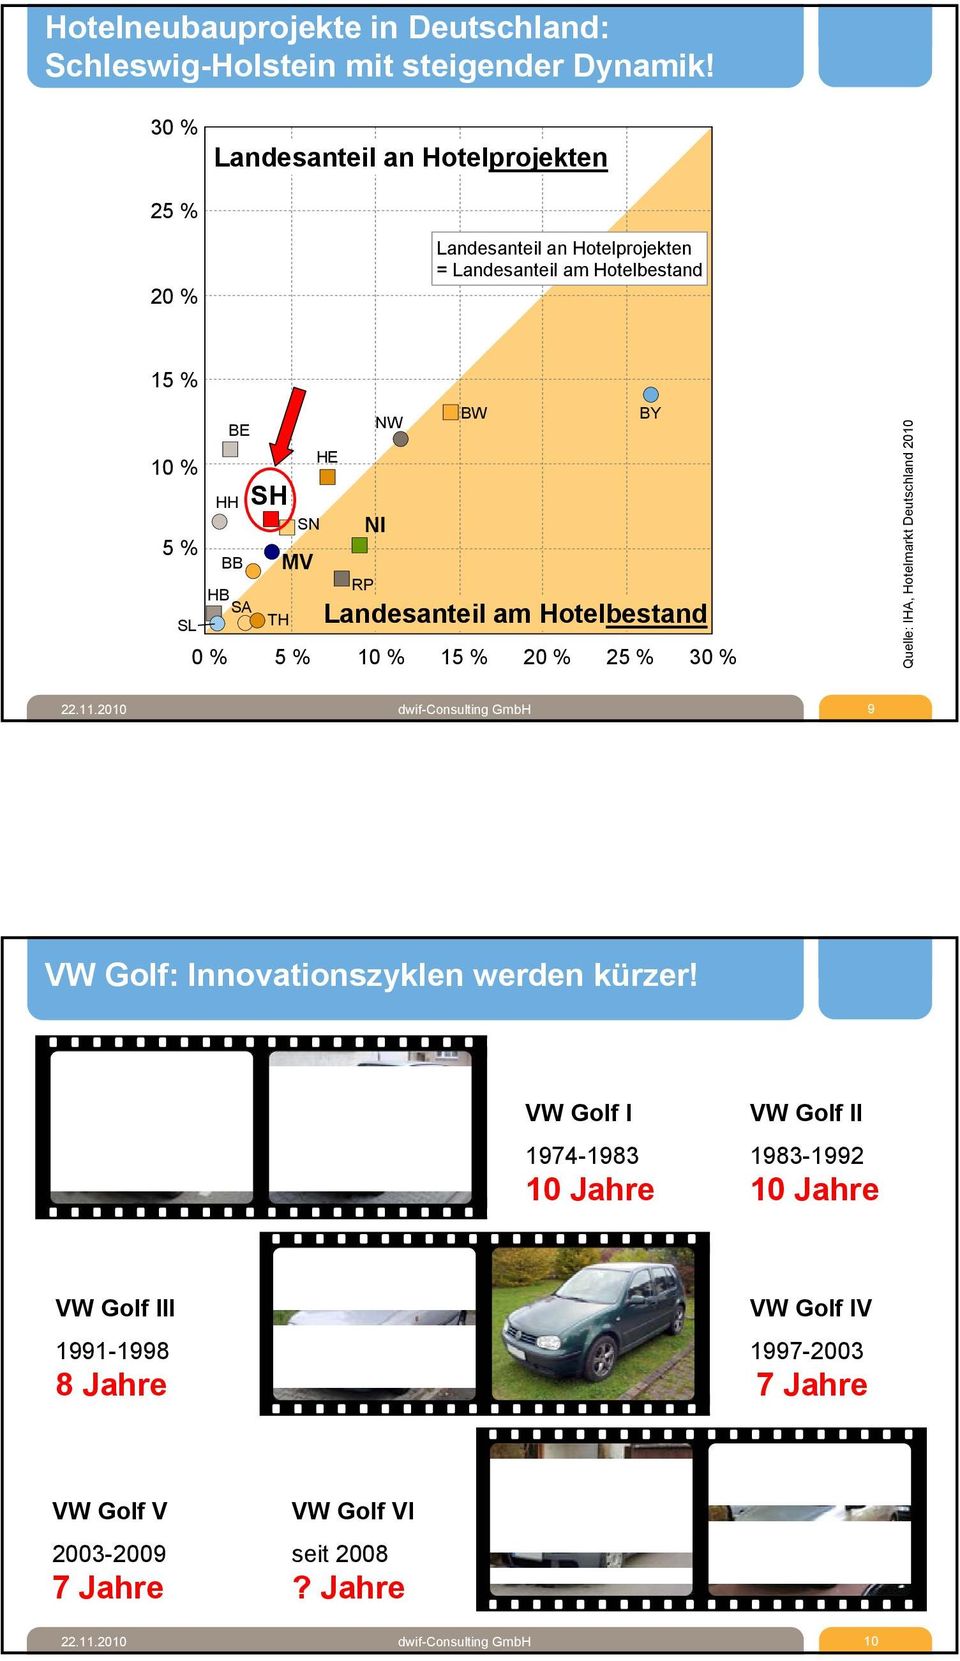 NI NW BW 0 % 5 % 10 % 15 % 20 % 25 % 30 % BY Landesanteil am Hotelbestand Quelle: IHA, Hotelmarkt Deutschland 2010 22.11.